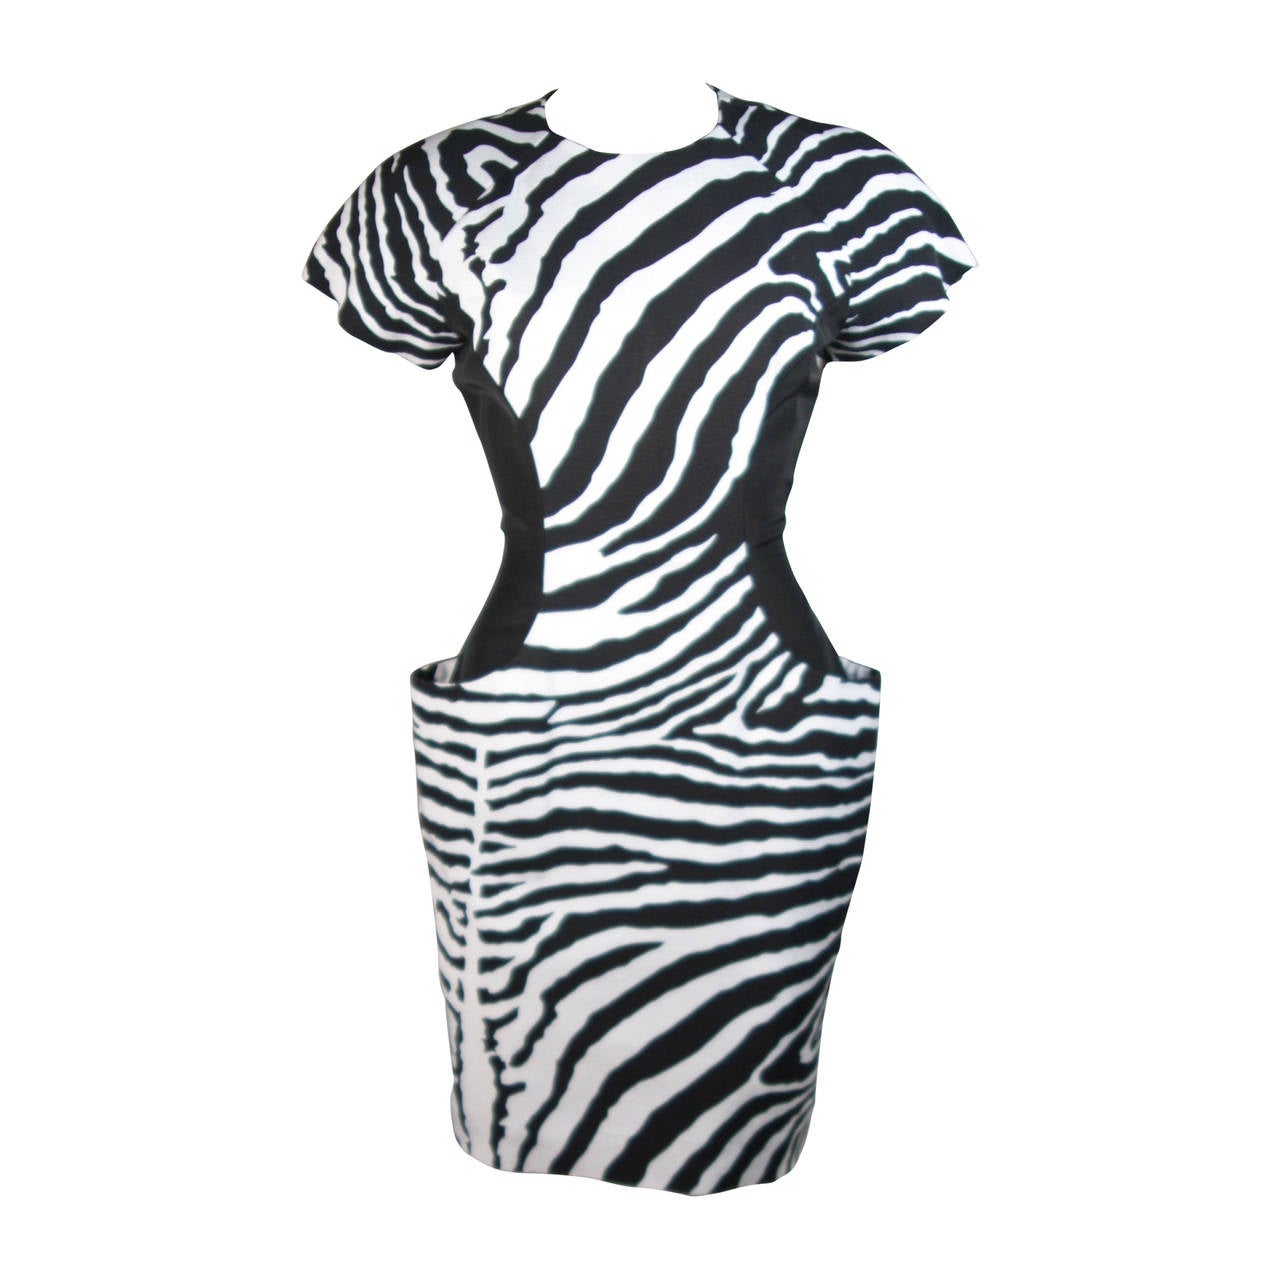 Vicky Tiel Black and White Zebra Patterned Cocktail Dress Size Small